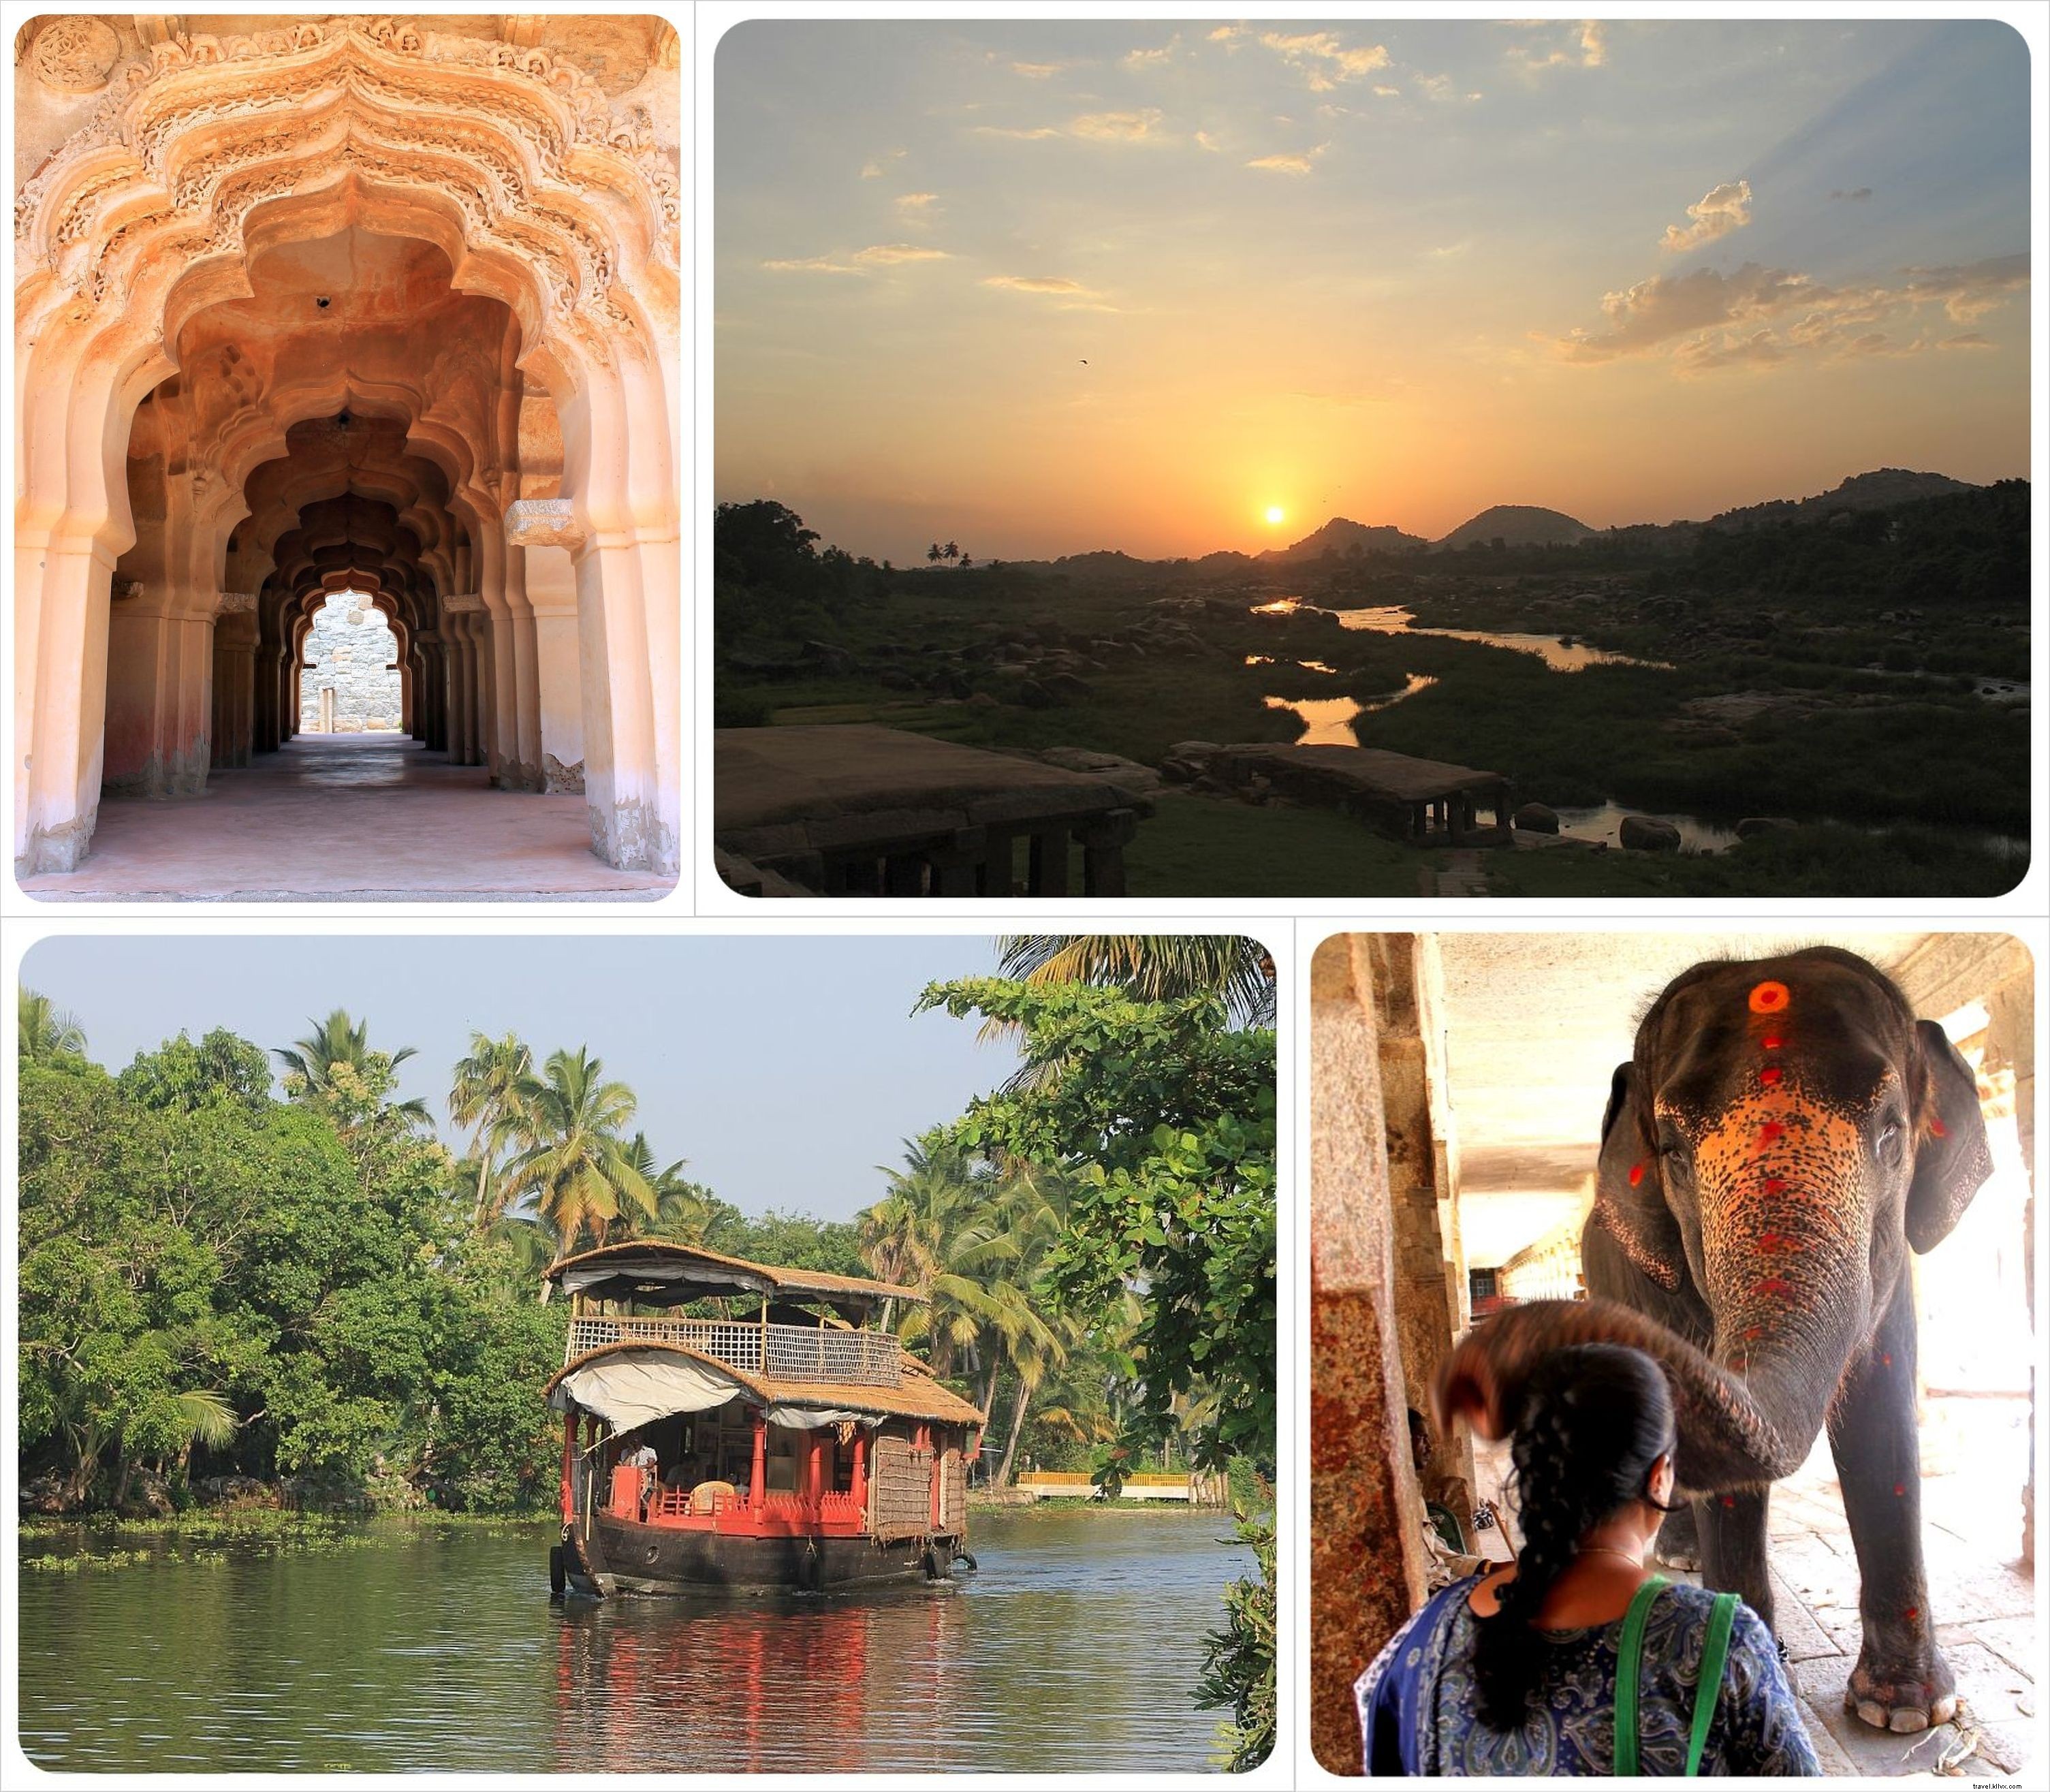 Viajando na Índia:uma experiência verdadeiramente transformadora de vida